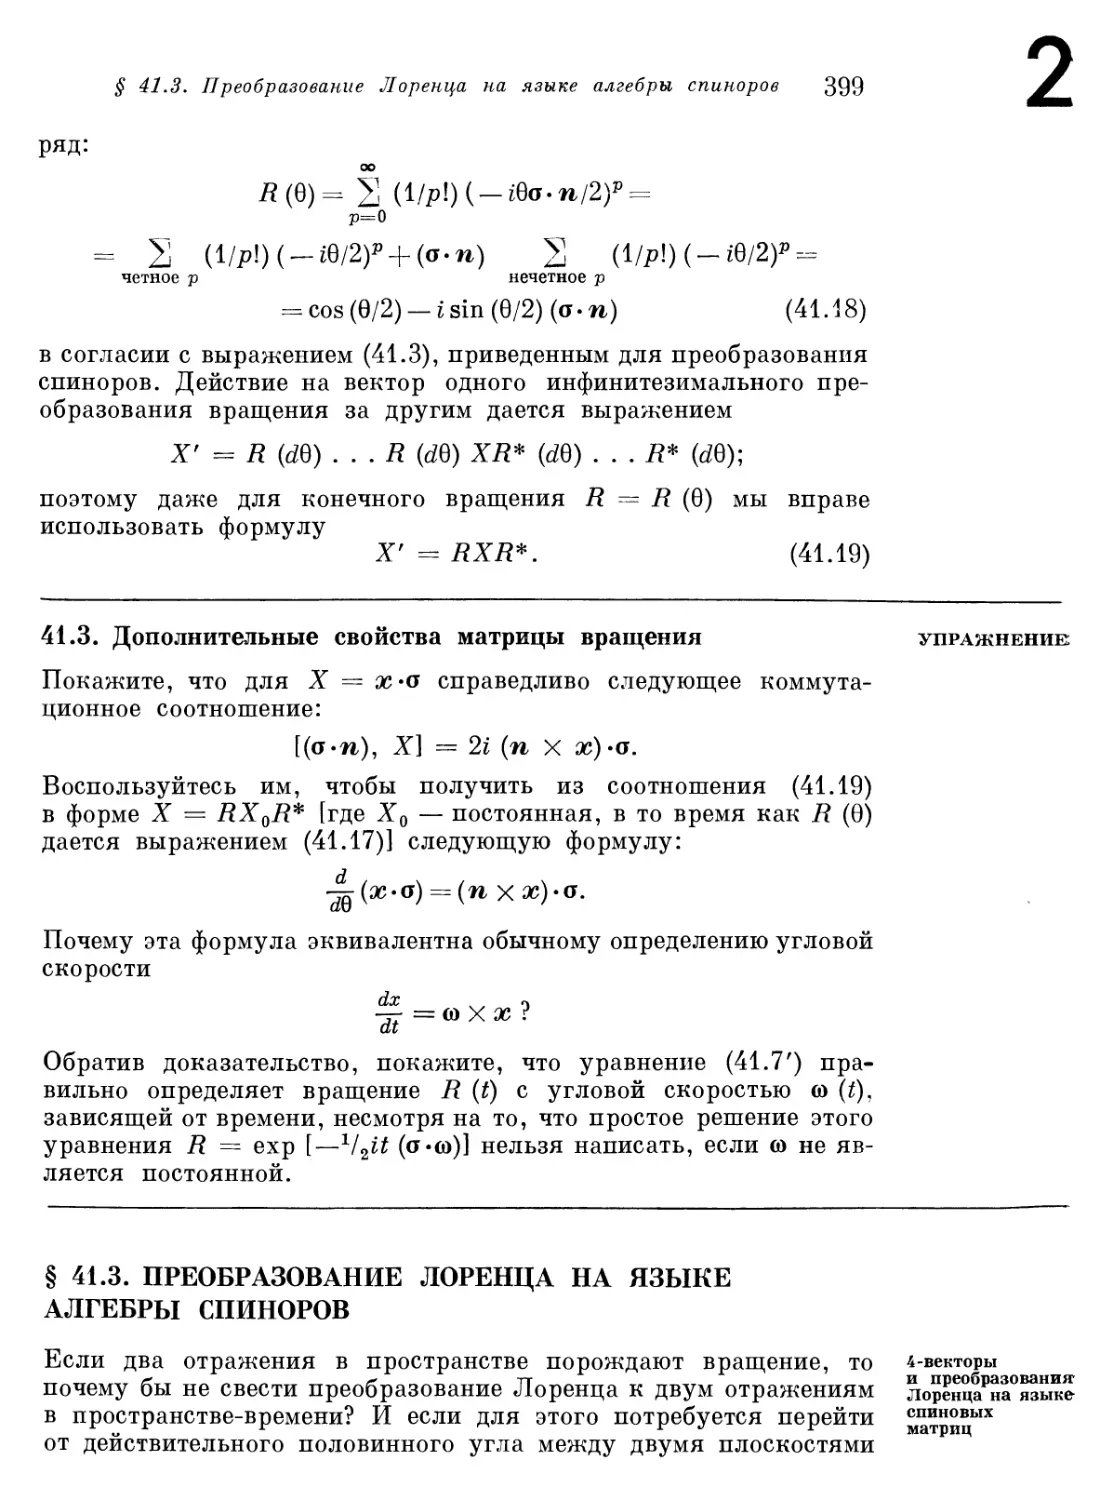 § 41.3. Преобразование Лоренца на языке алгебры спиноров